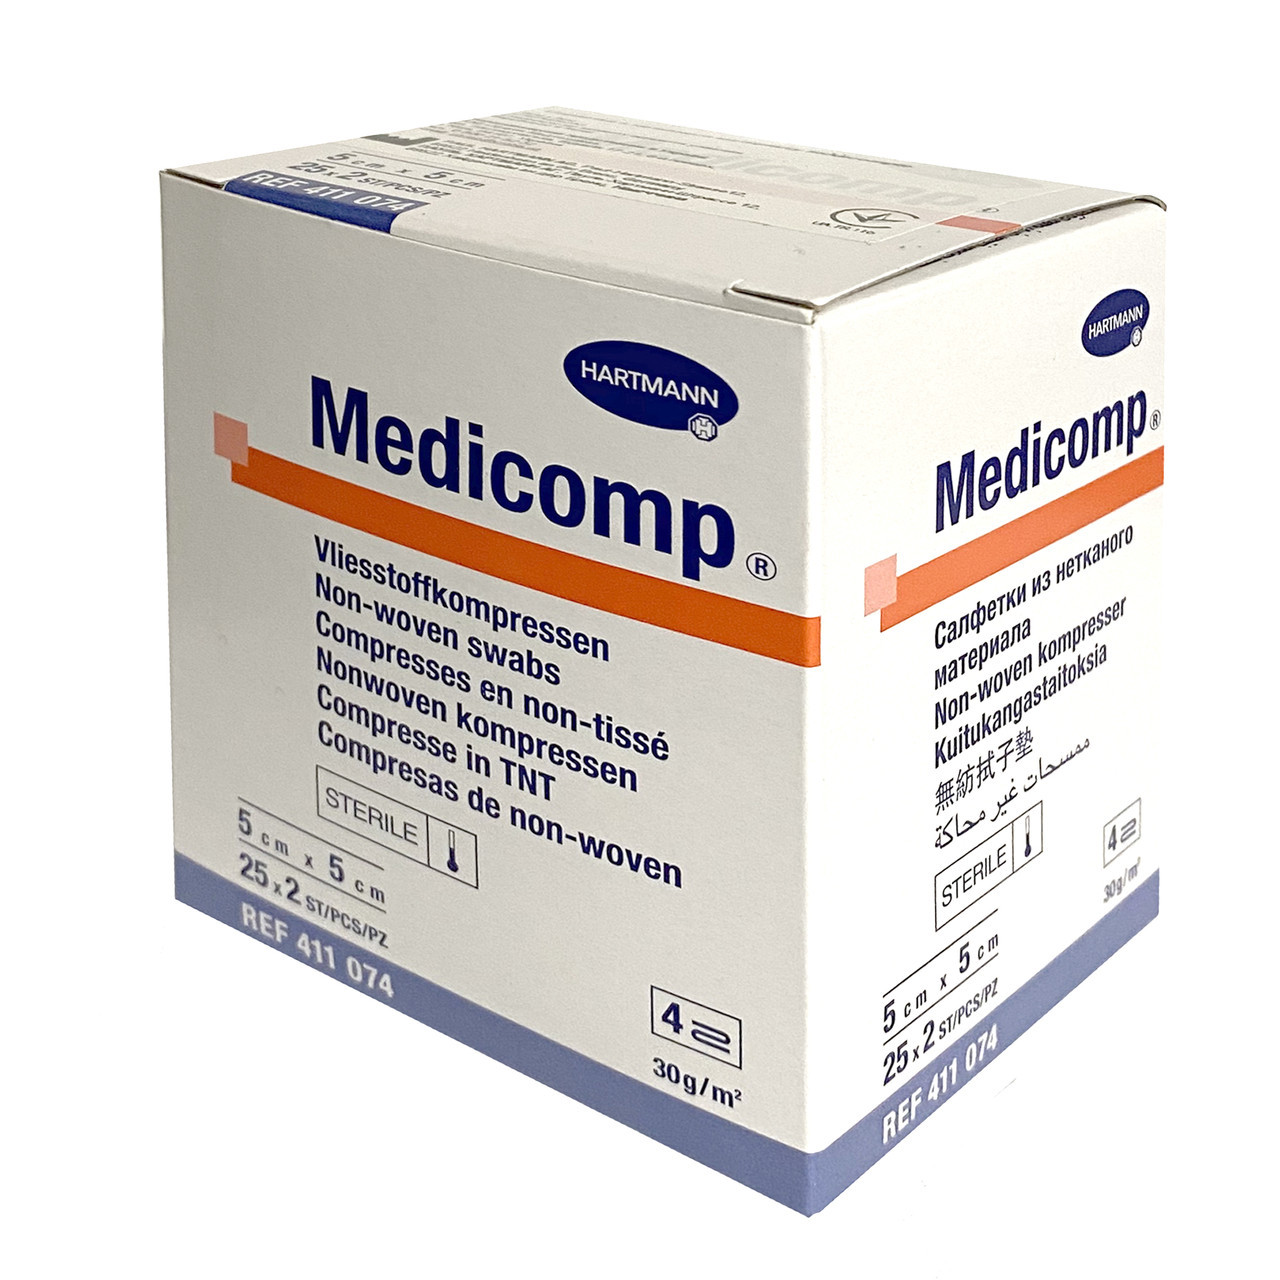 Купить Medicomp 5 х 5 см - стерильные салфетки из нетканого материала .